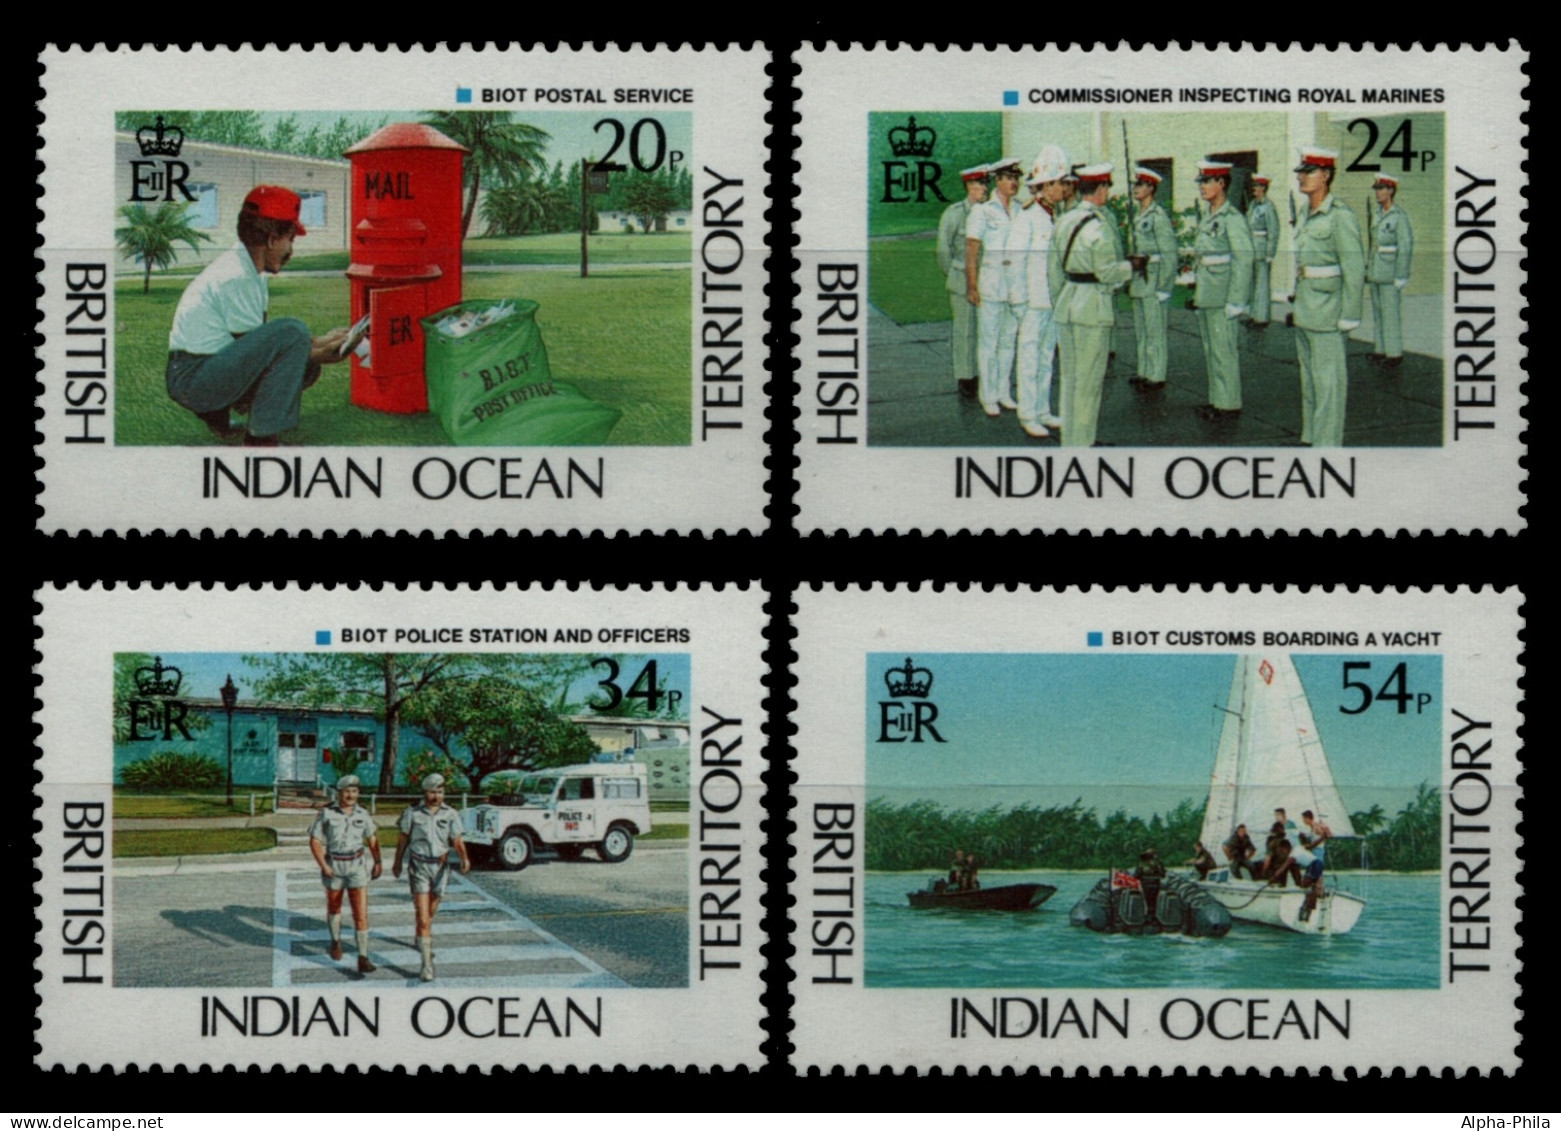 BIOT 1991 - Mi-Nr. 111-114 ** - MNH - Post - Polizei - Zoll - Territorio Britannico Dell'Oceano Indiano